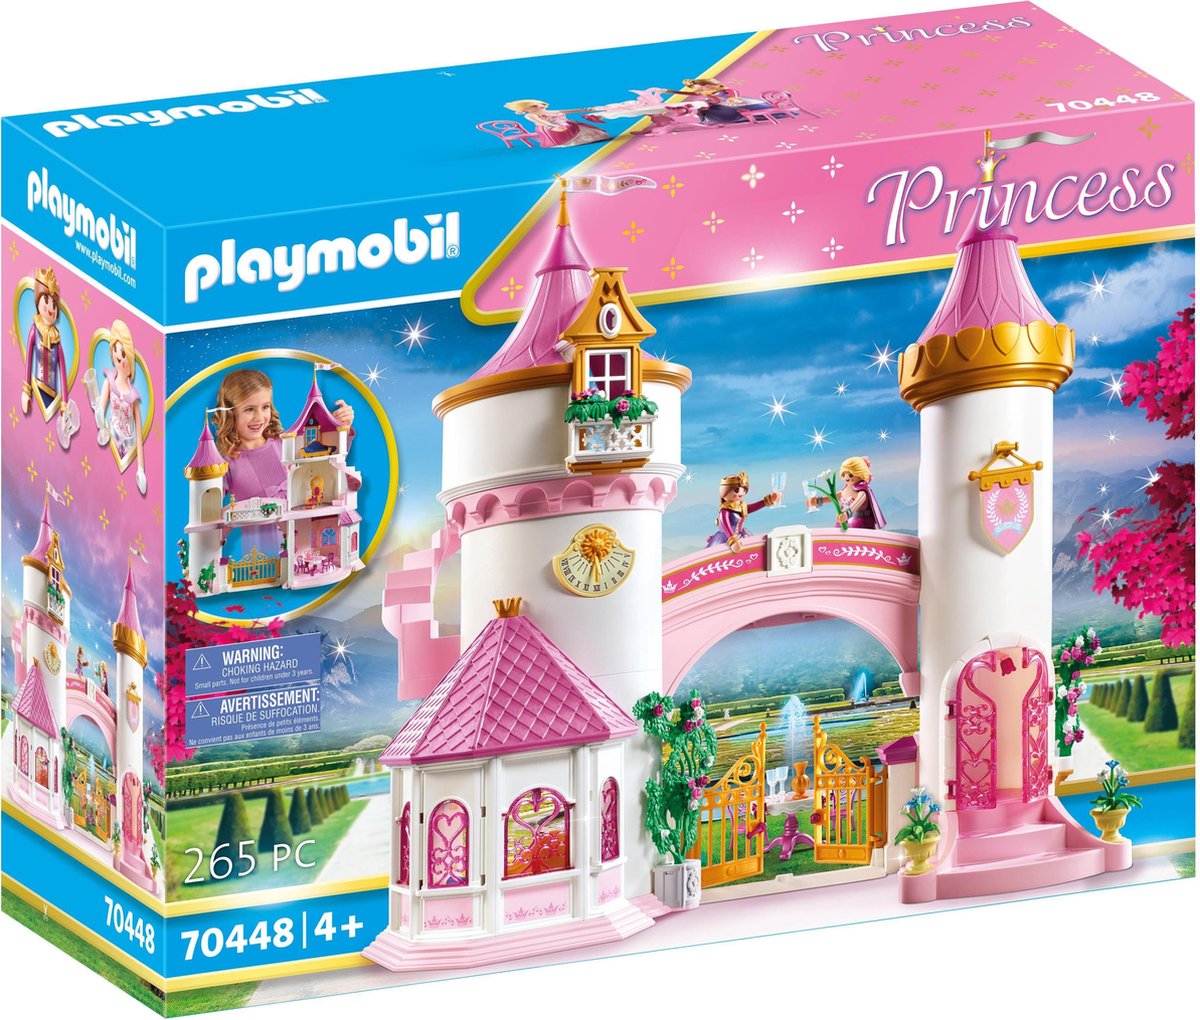 PLAYMOBIL Princess Prinsessenkasteel - 70448 - PLAYMOBIL